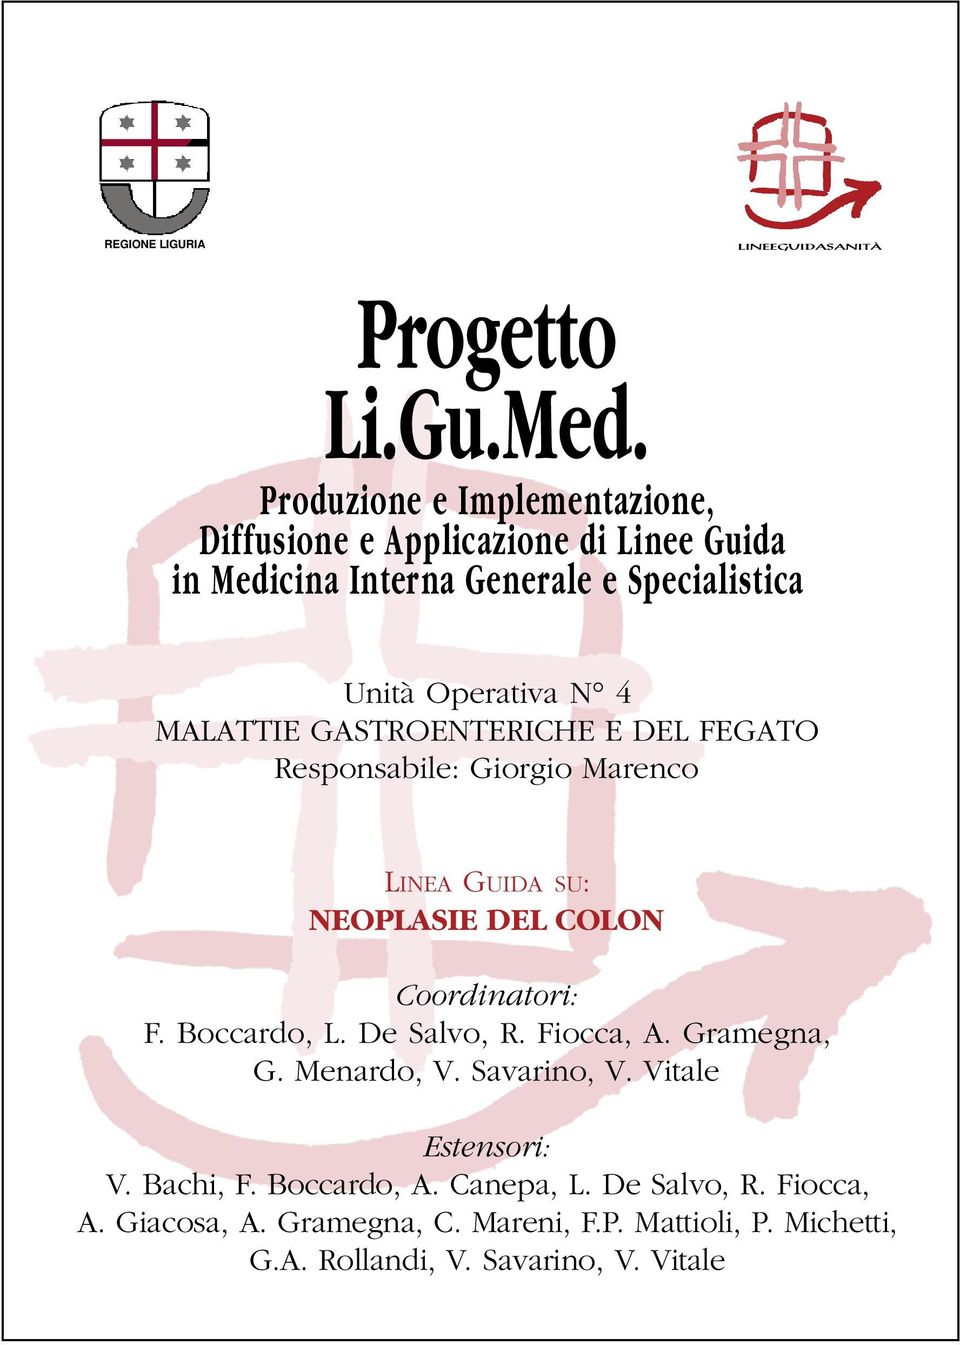 MALATTIE GASTROENTERICHE E DEL FEGATO Responsabile: Giorgio Marenco LINEA GUIDA SU: NEOPLASIE DEL COLON Coordinatori: F. Boccardo, L.